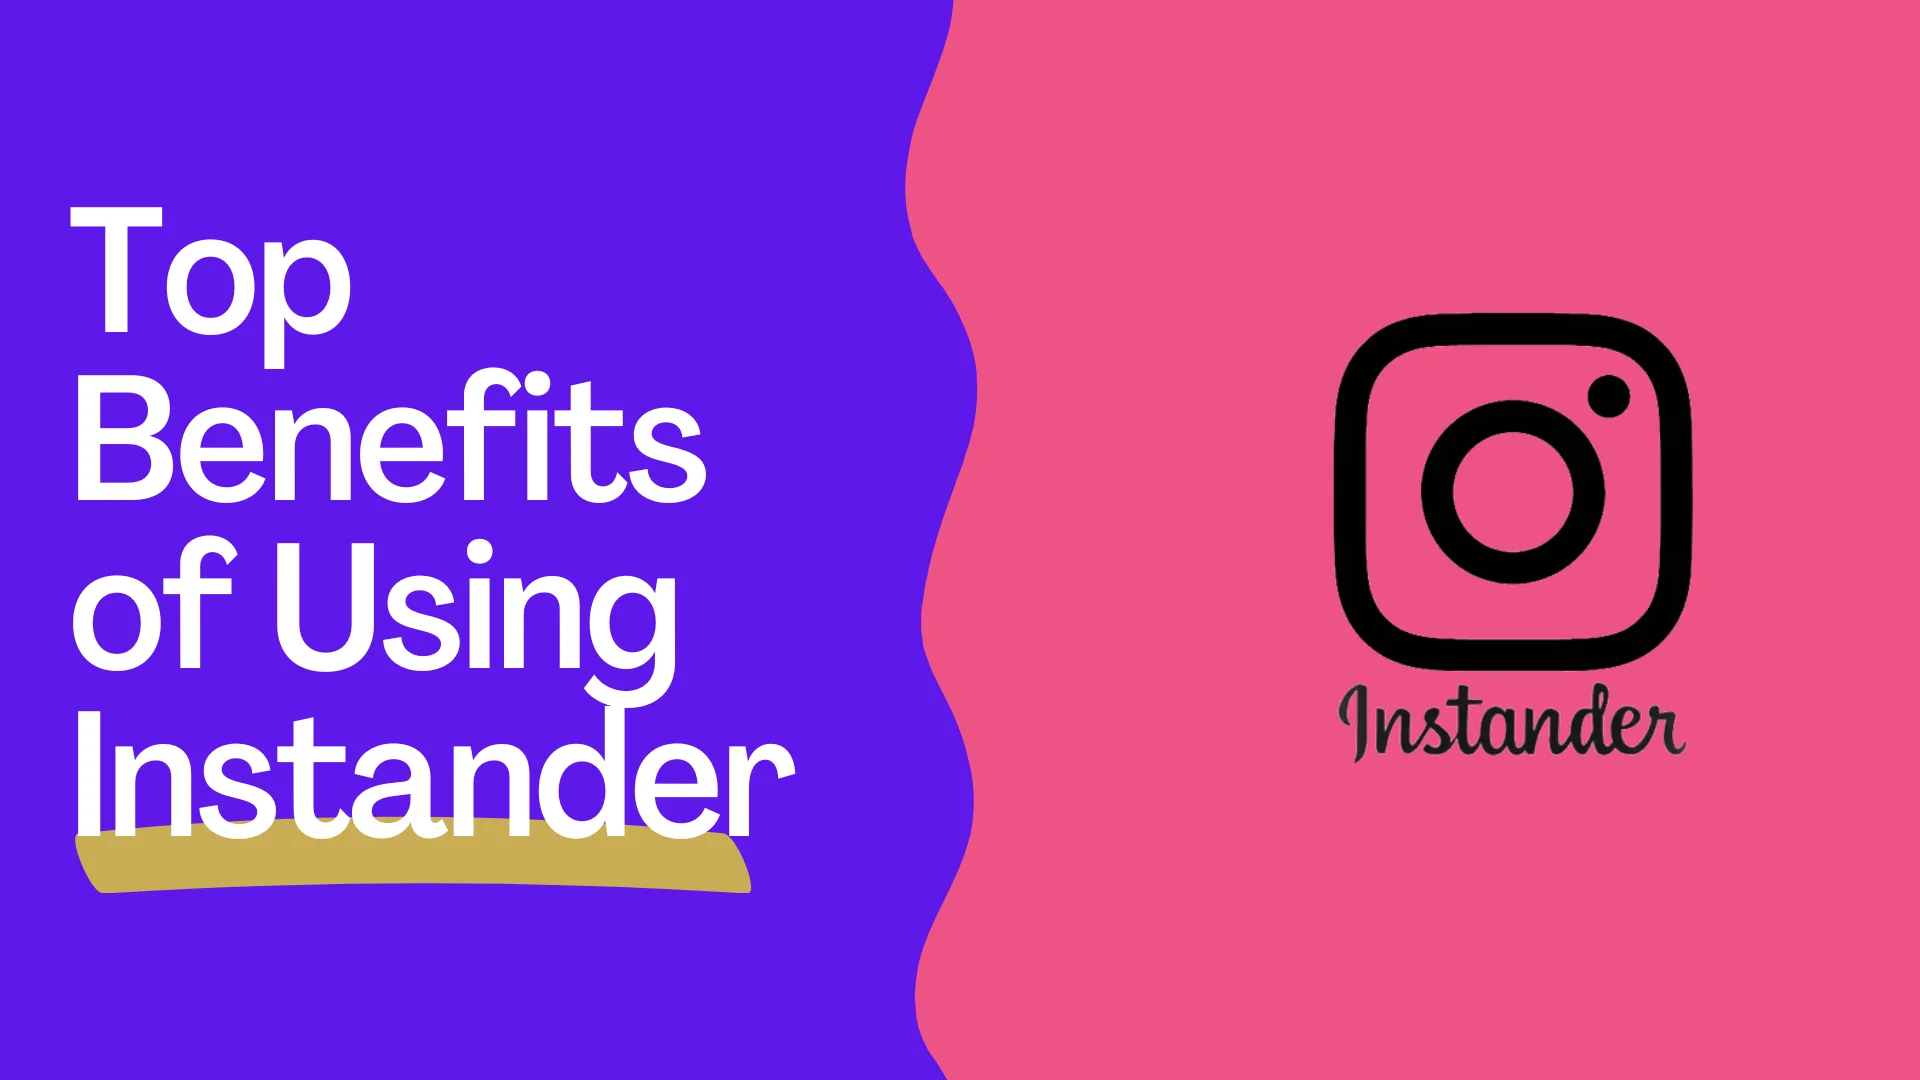 Top benefits of using Instander Banner.